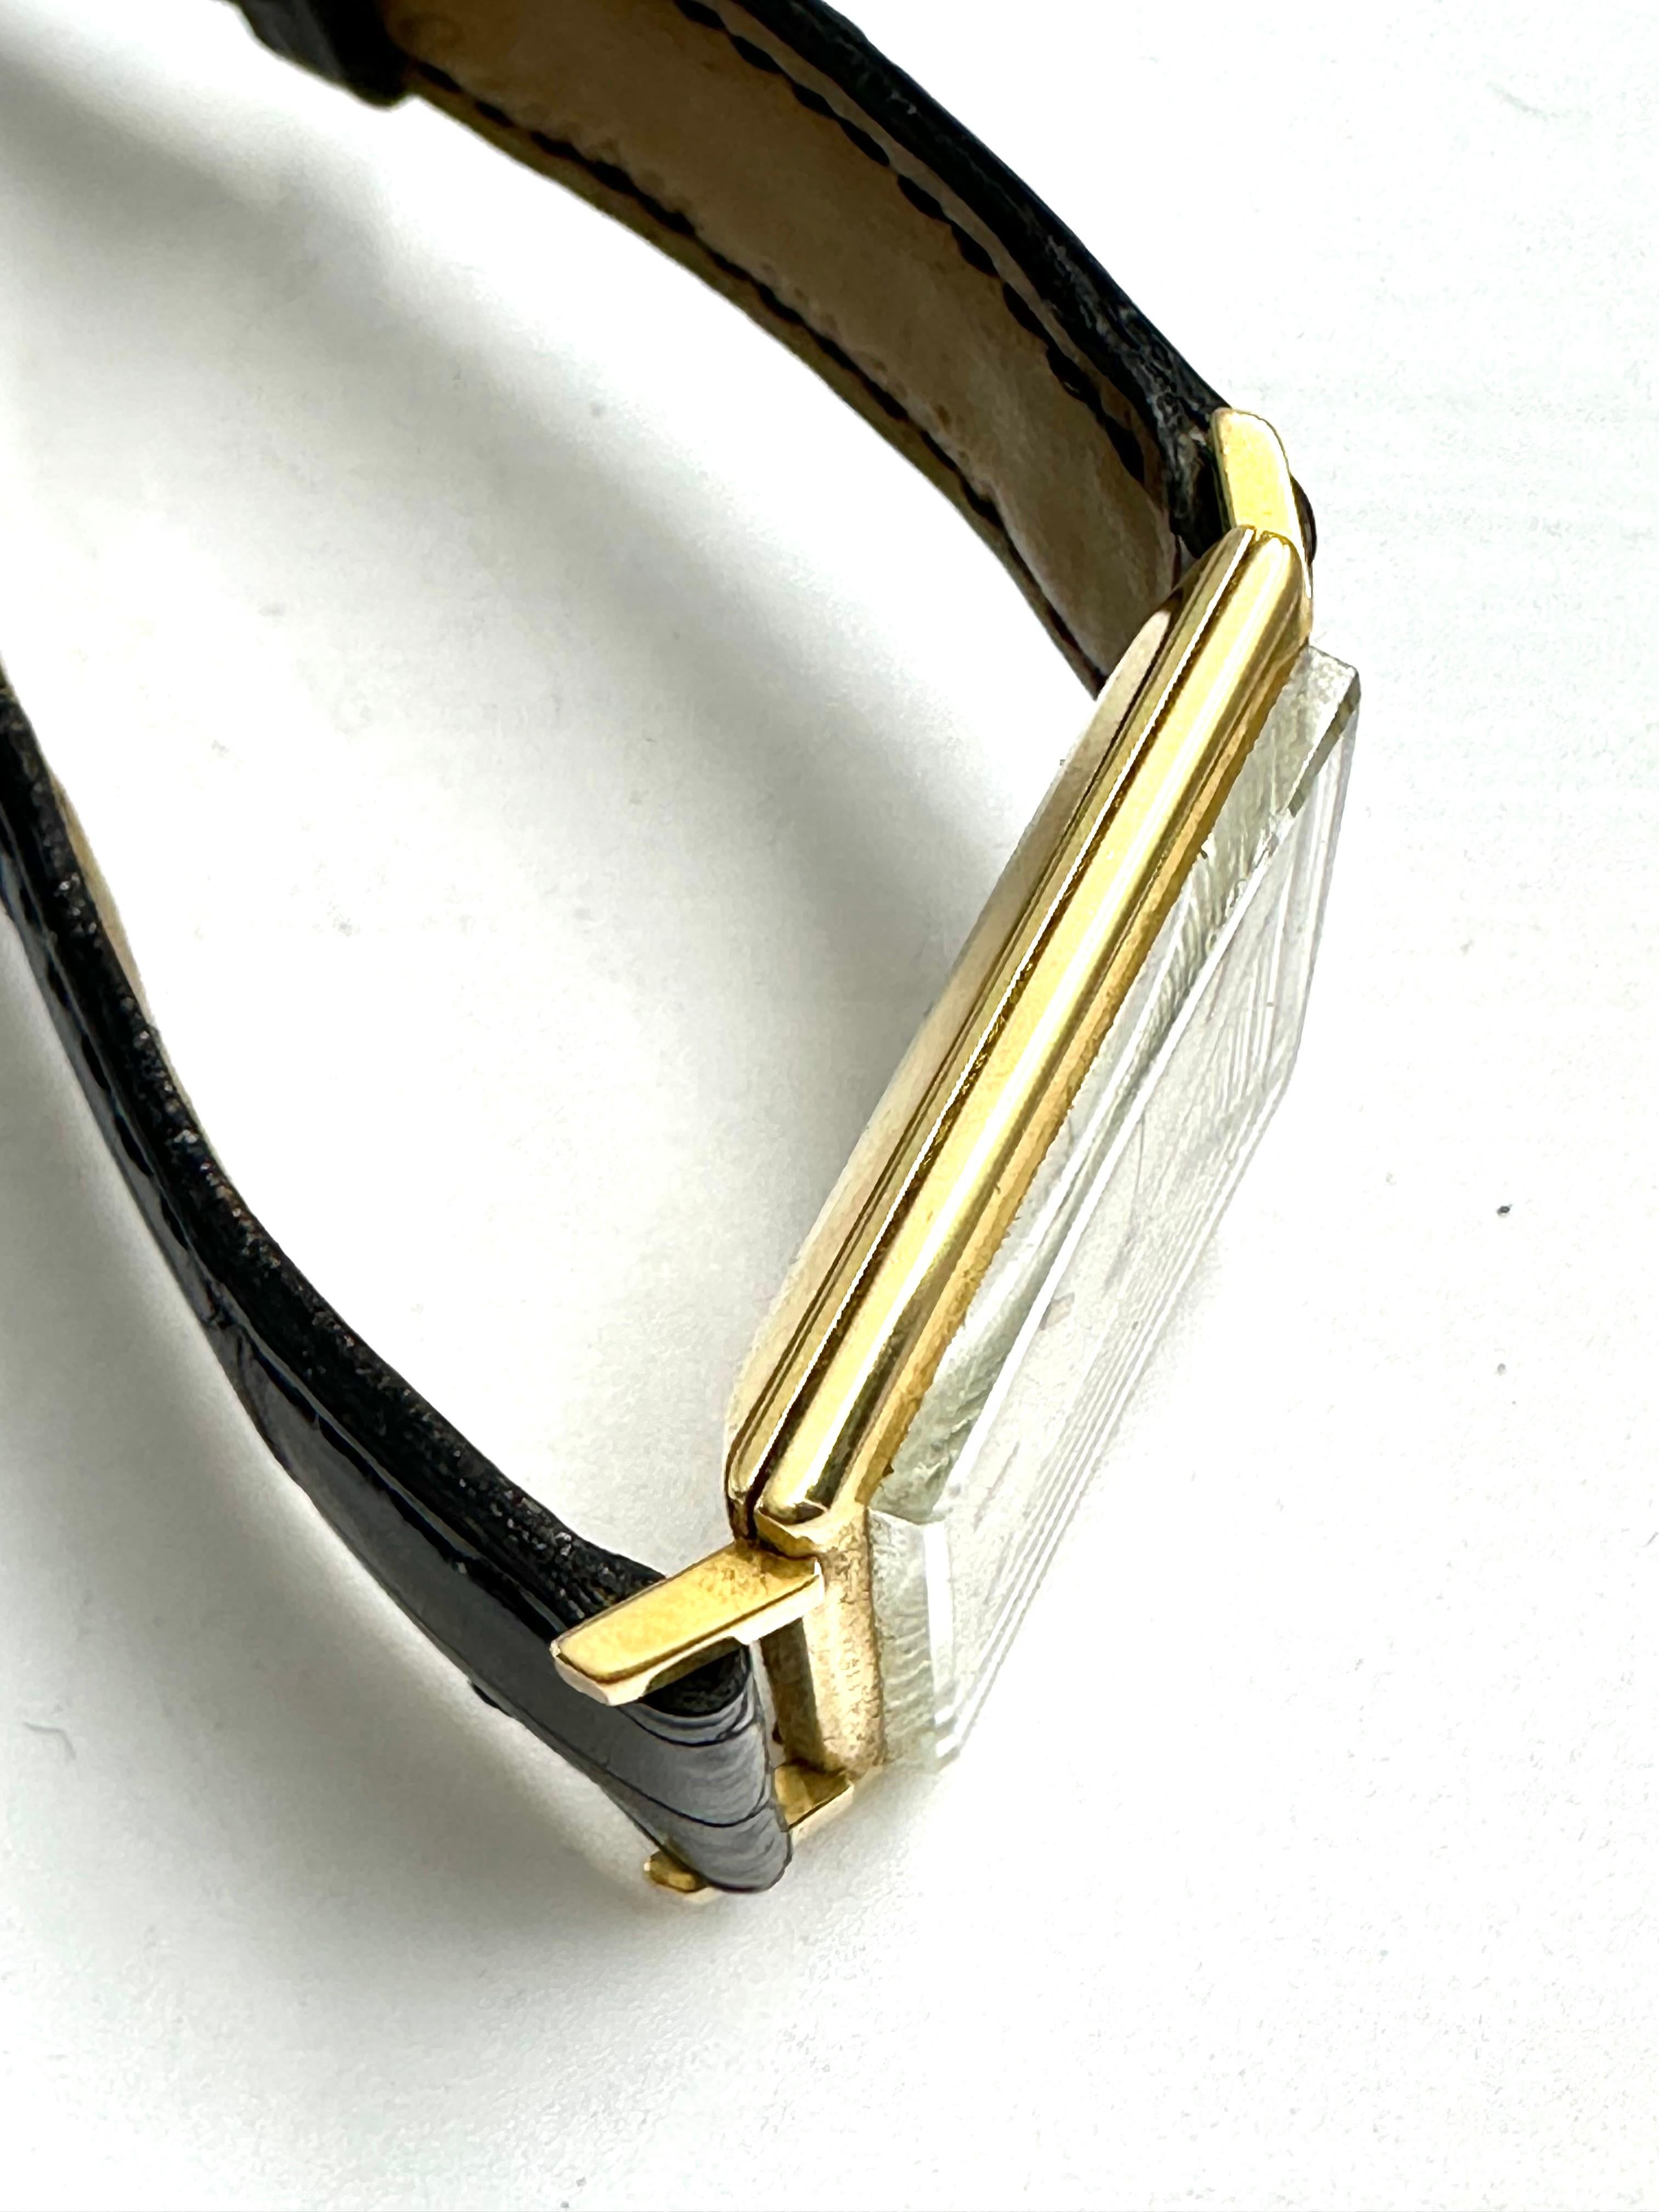 Eine schöne klassische Armbanduhr von Jaeger-LeCoultre aus 18-karätigem Gold. 
Diese Armbanduhr ist in gutem Zustand und funktioniert einwandfrei. 
Vollständig original mit dem JLC-Logo auf dem Zifferblatt und der Krone. 
Die Uhr ist mit Handaufzug